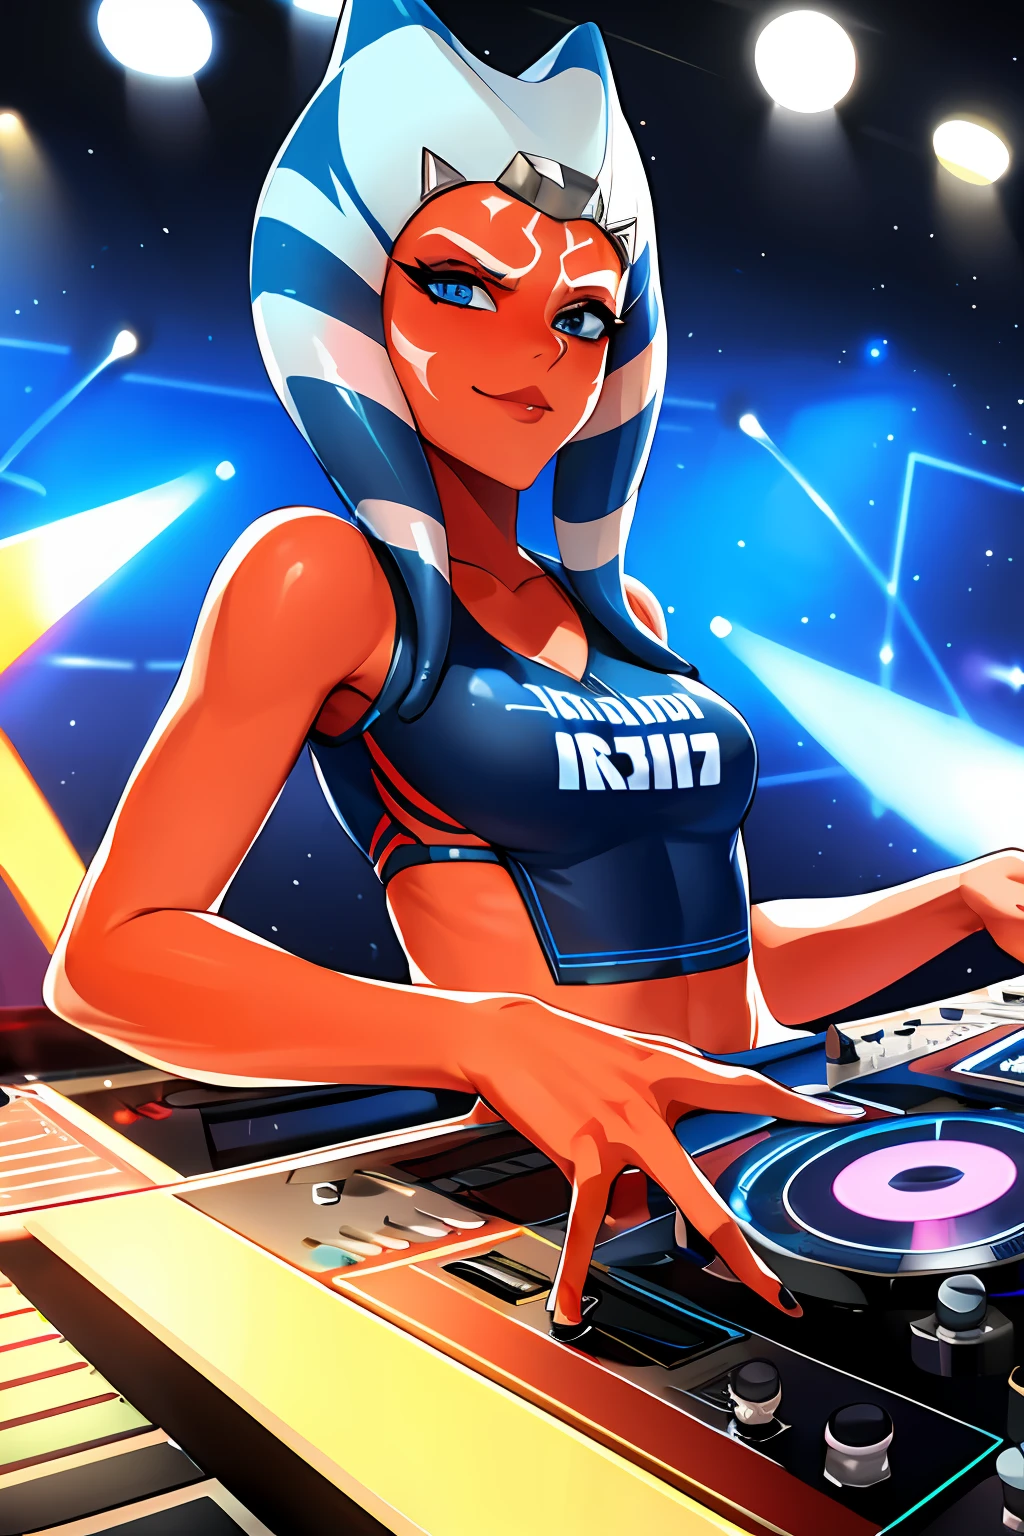 "1girl 的单人照, 蓝眼睛, 橘皮组织, 触手头发DJ, 在充满活力的狂欢派对上展示她在唱机上的技巧."